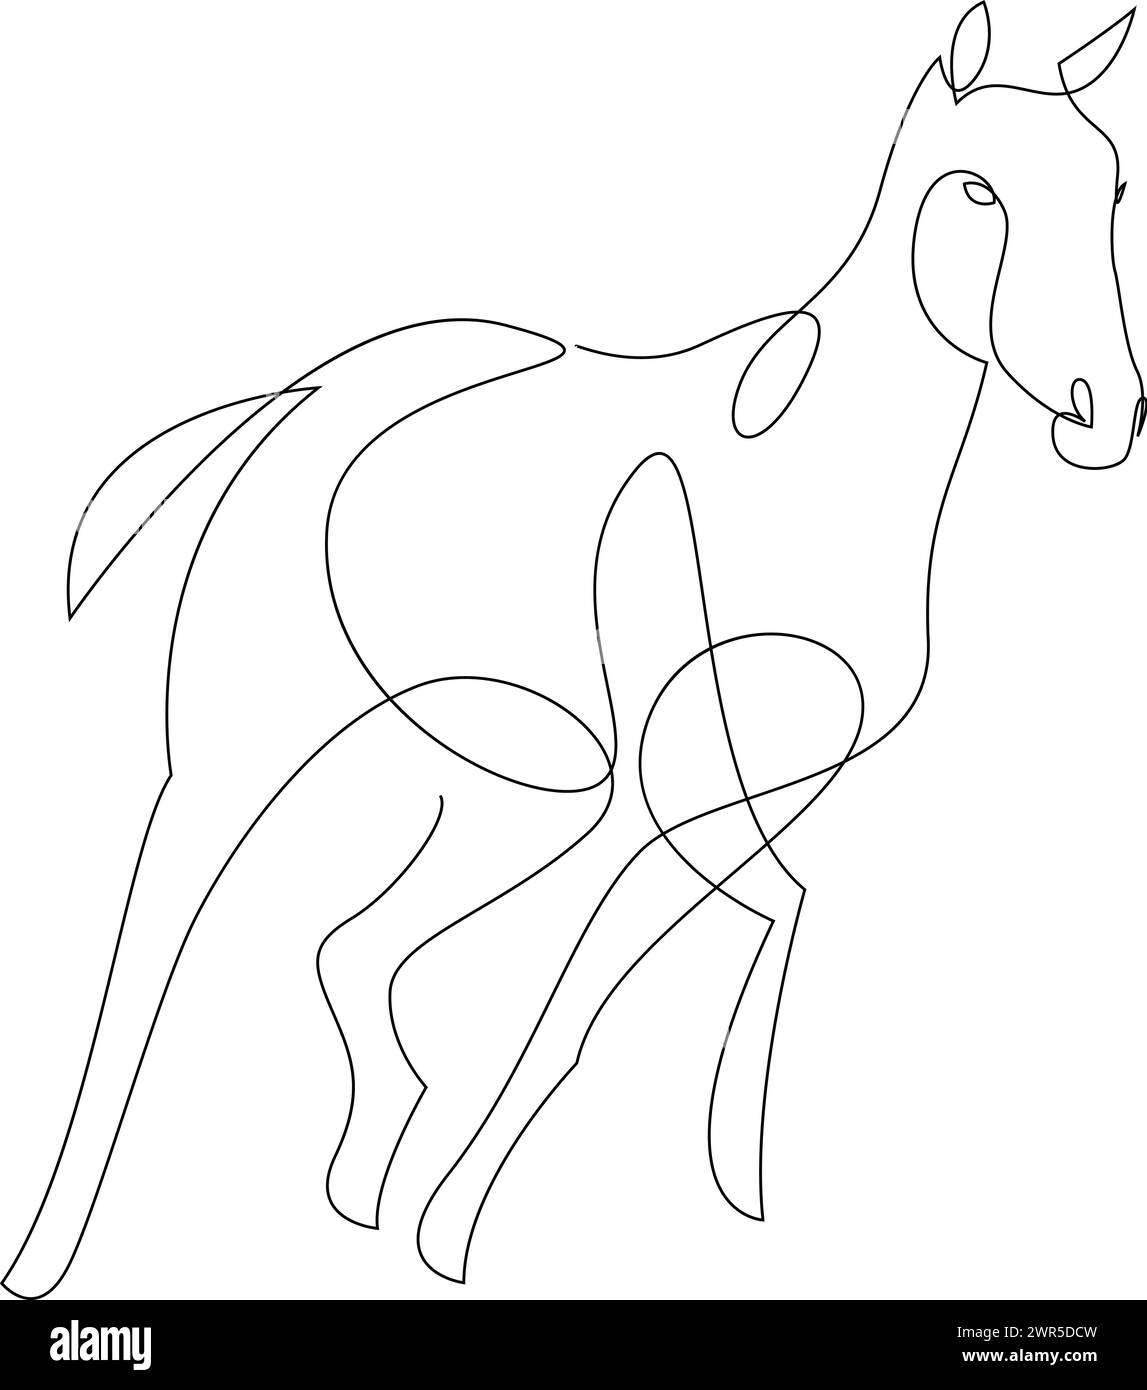 Durchgehende Einzeichenzeichnung eines laufenden Pferdes. Schwarz-weiß-Vektorillustration Stock Vektor